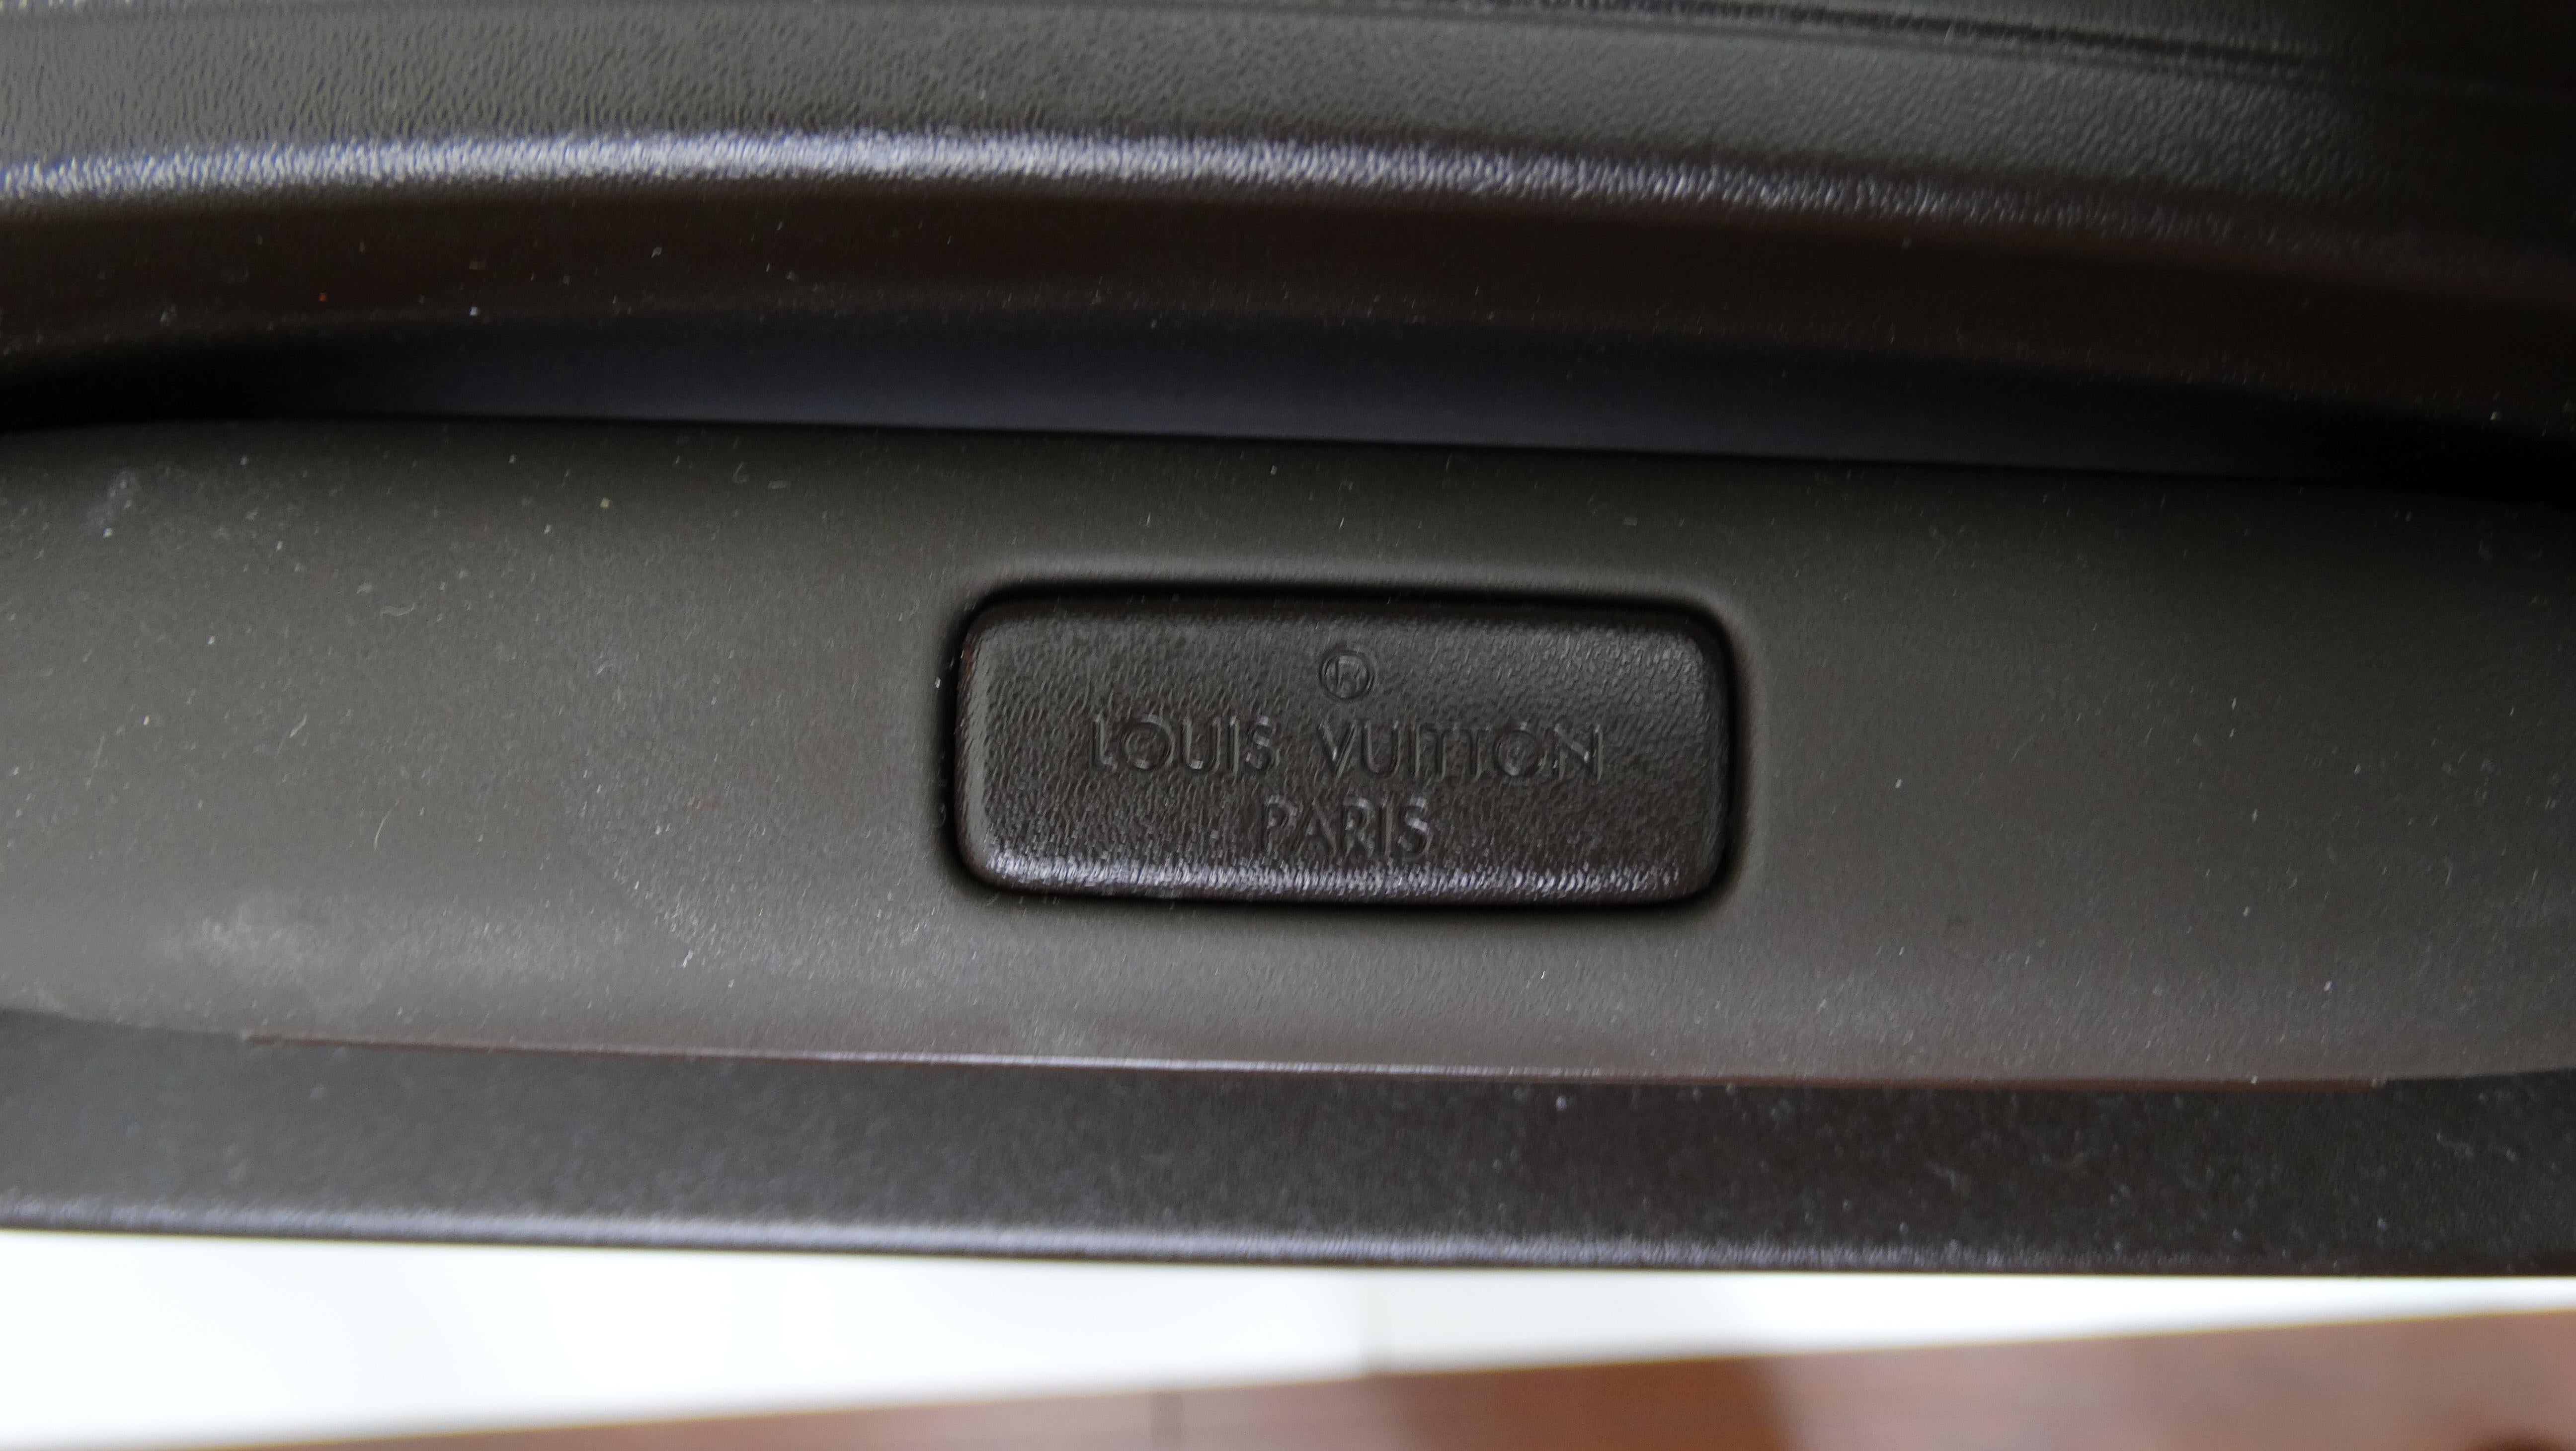 Louis Vuitton Ebene Trolley 4 Roues 70 CM Suitcase & Accessories 3